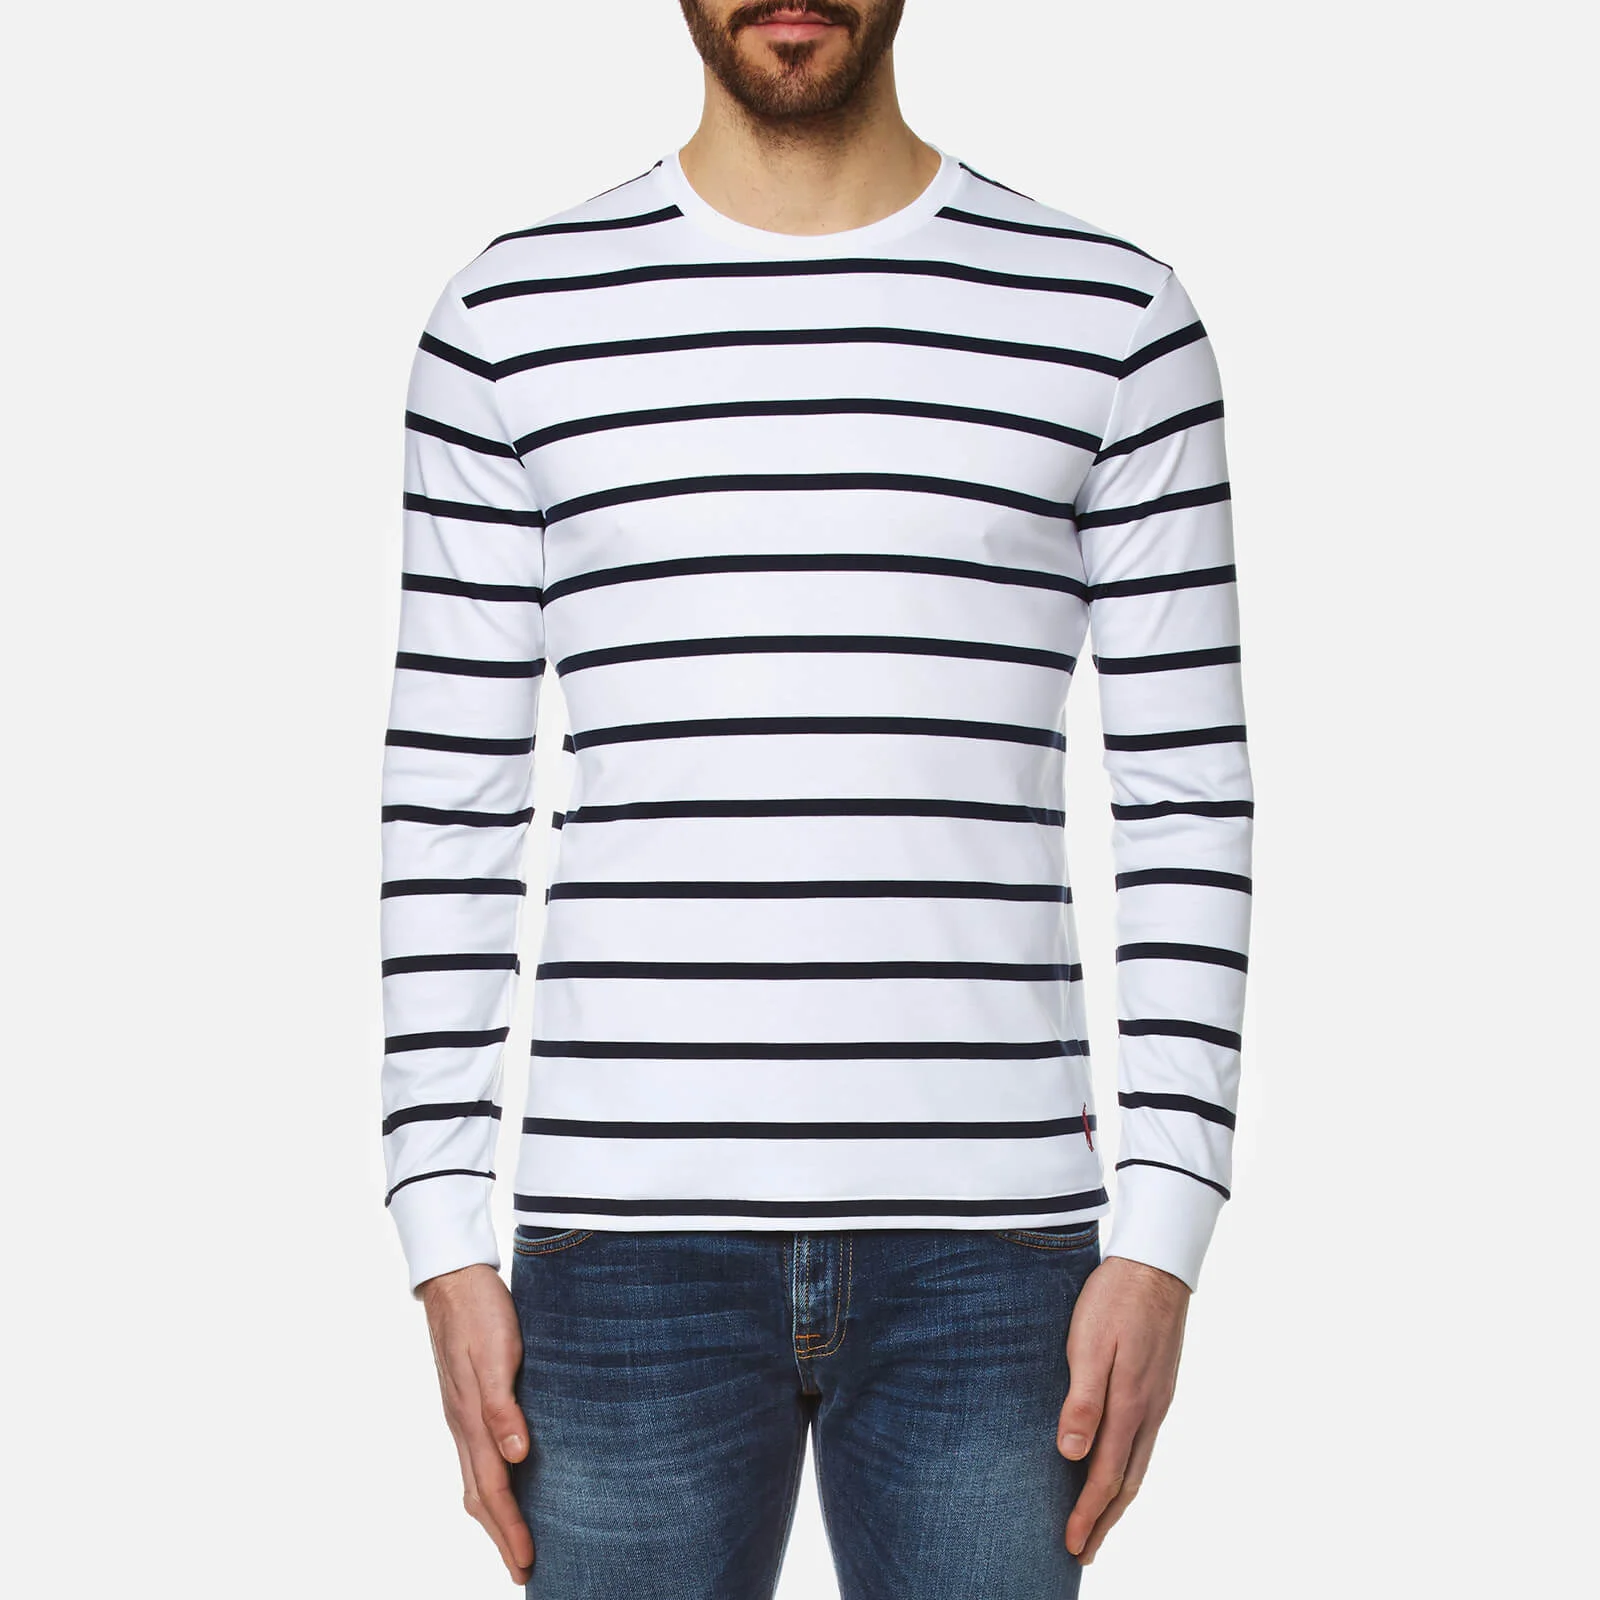 Polo Ralph Lauren Men's Long Sleeve Striped T-Shirt - White/Navy Image 1